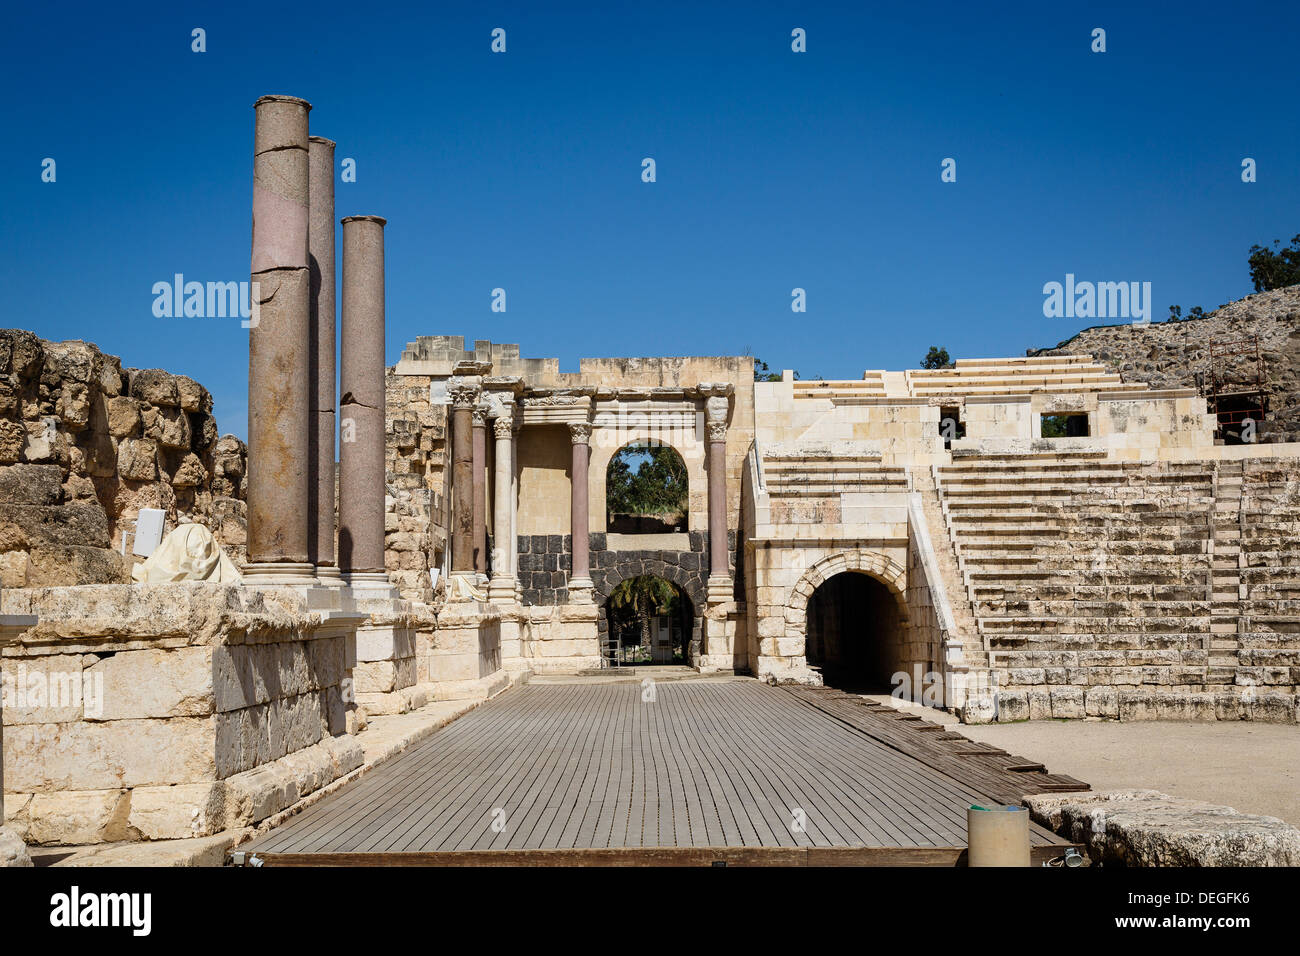 Ruines de l'amphithéâtre, d'Roman-Byzantine ville de Scythopolis, tel le parc national de Beit Shean, Beit Shean, Israël, Moyen Orient Banque D'Images